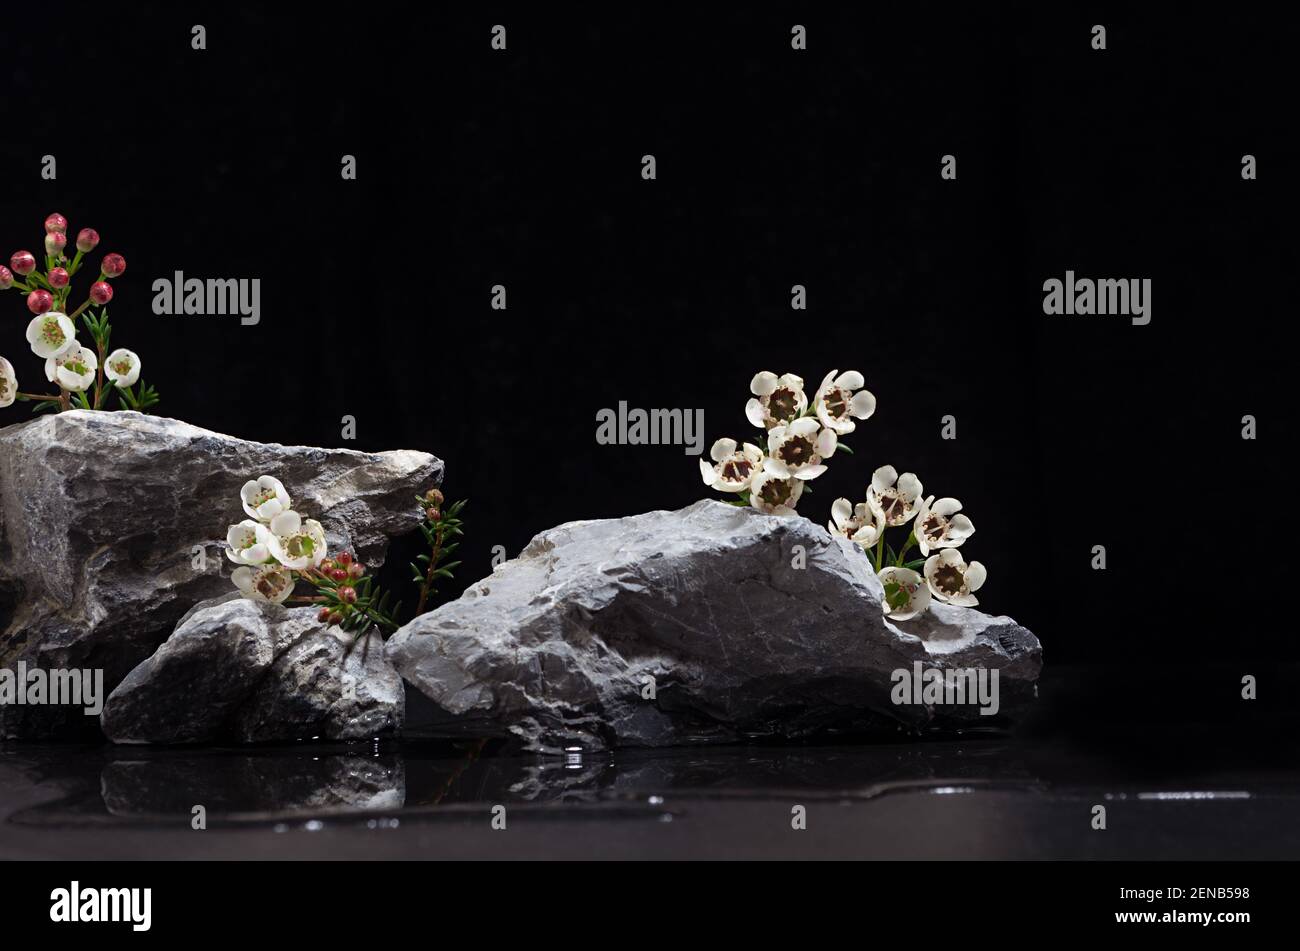 Podium en pierre rugueuse naturelle avec de petites fleurs blanches de printemps douces et de l'eau comme plage la nuit pour montrer l'emballage et produit sur fond noir foncé Banque D'Images